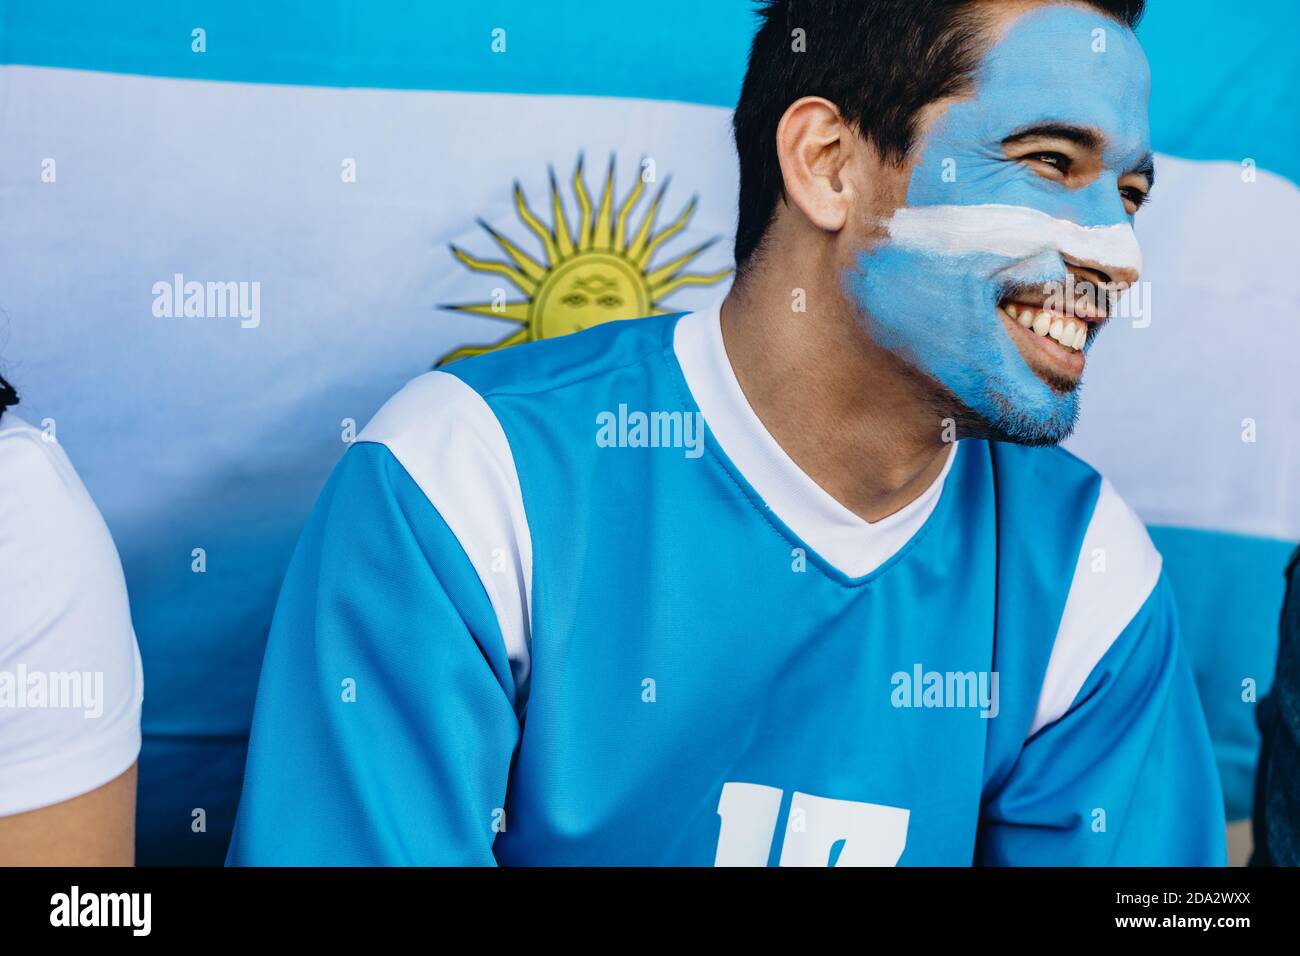 Hombre sentado en el estadio con su cara pintada en colores de bandera Argentina. Devoto fan con la bandera Argentina detrás en el estadio de fútbol. Foto de stock